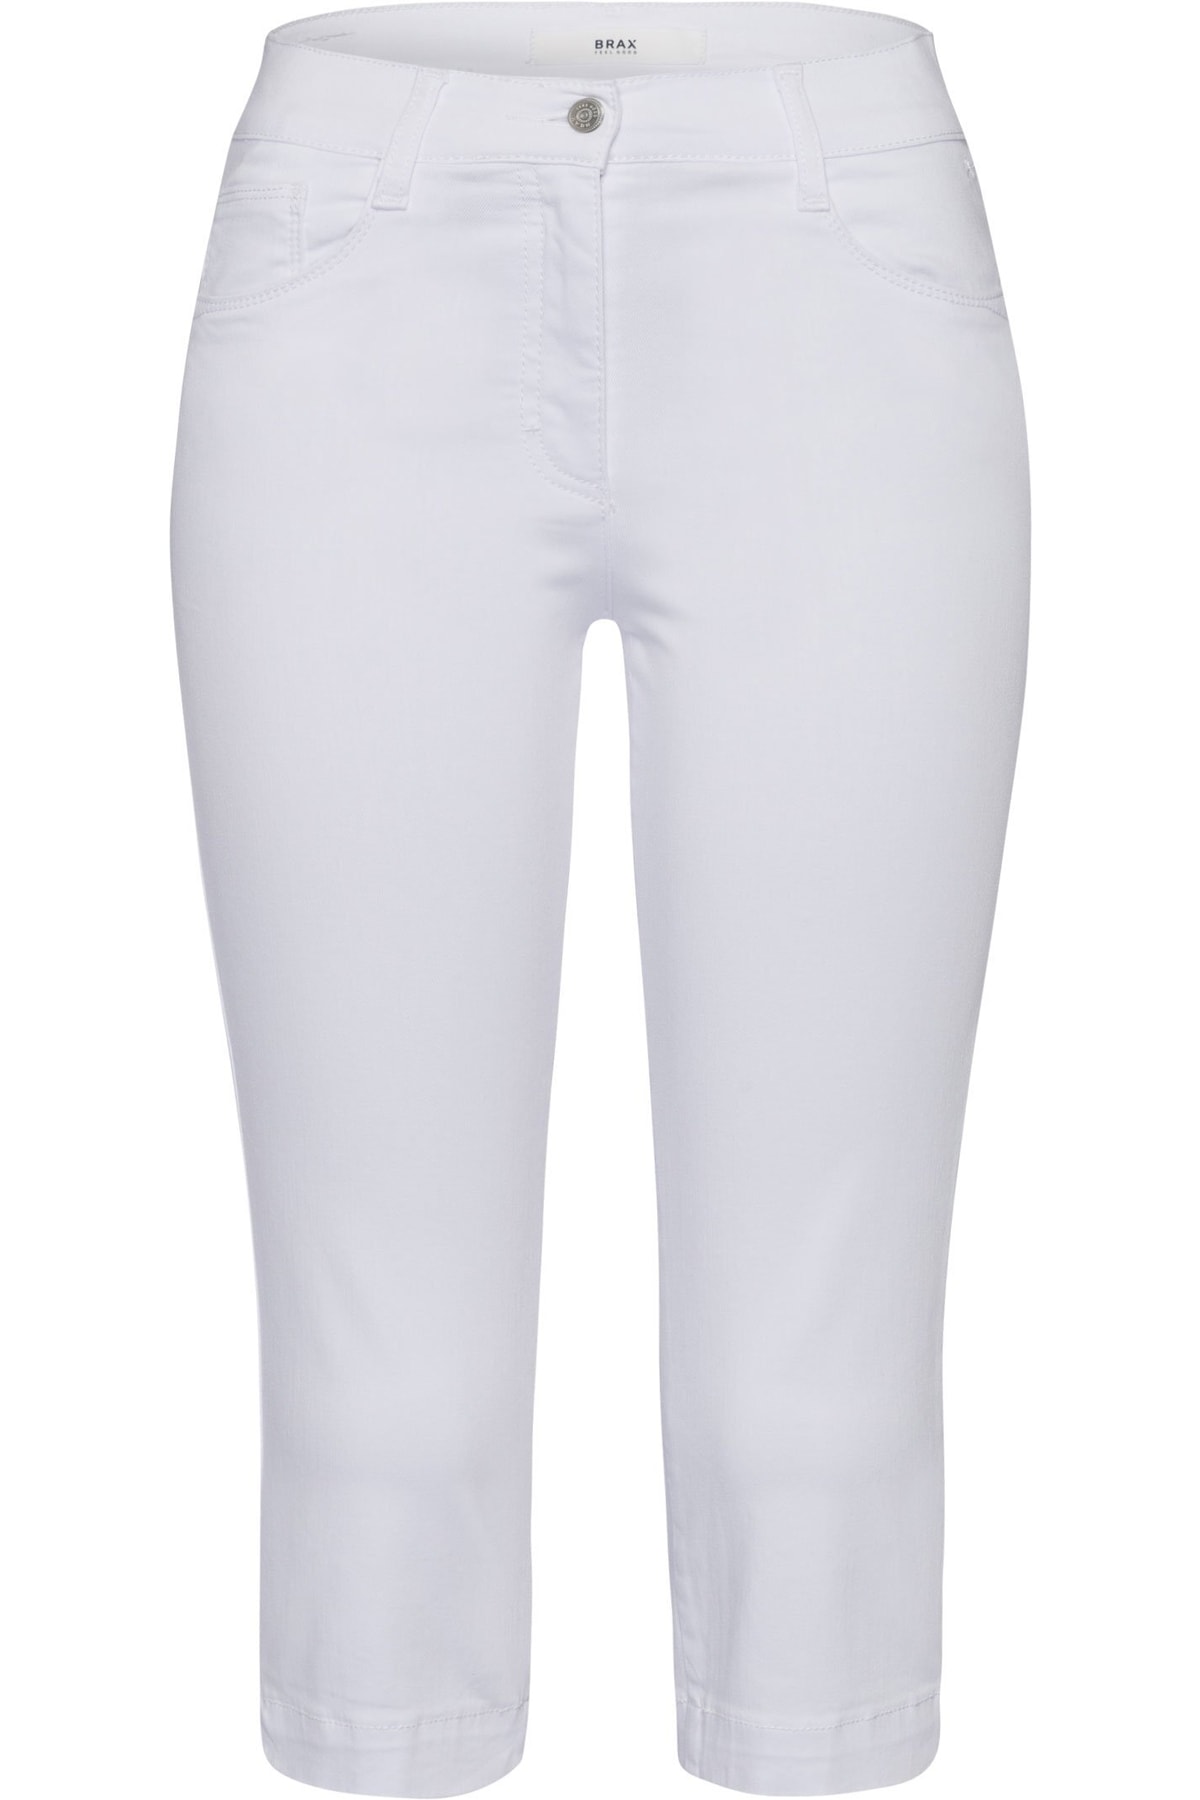 Brax Jeans Weiß Straight Fast ausverkauft